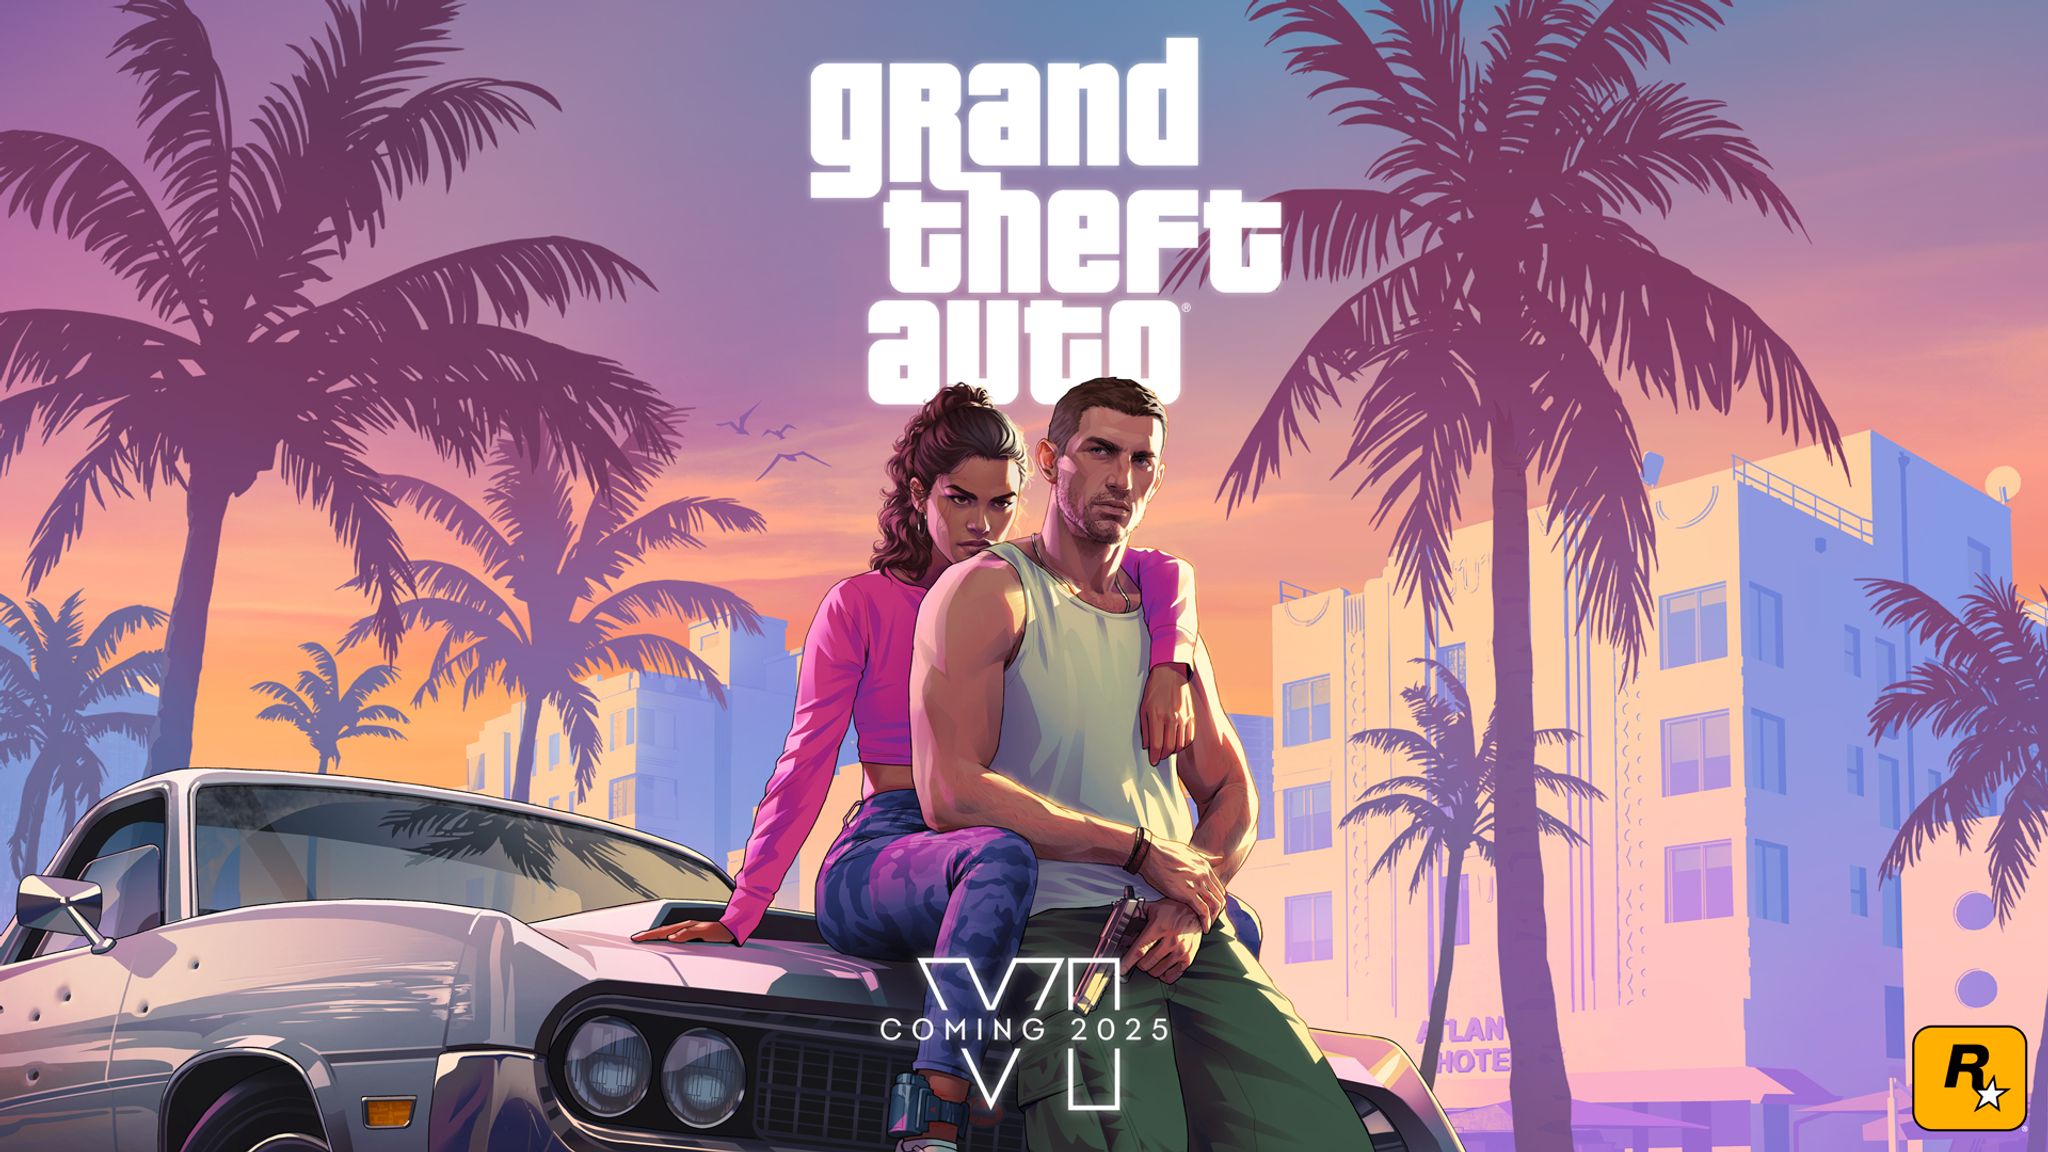 Die vergangene Ausgabe «Grand Theft Auto V» erschien bereits 2013. Nach jahrelanger Wartezeit müssen sich Videospiele-Fans nun noch bis 2025 gedulden.